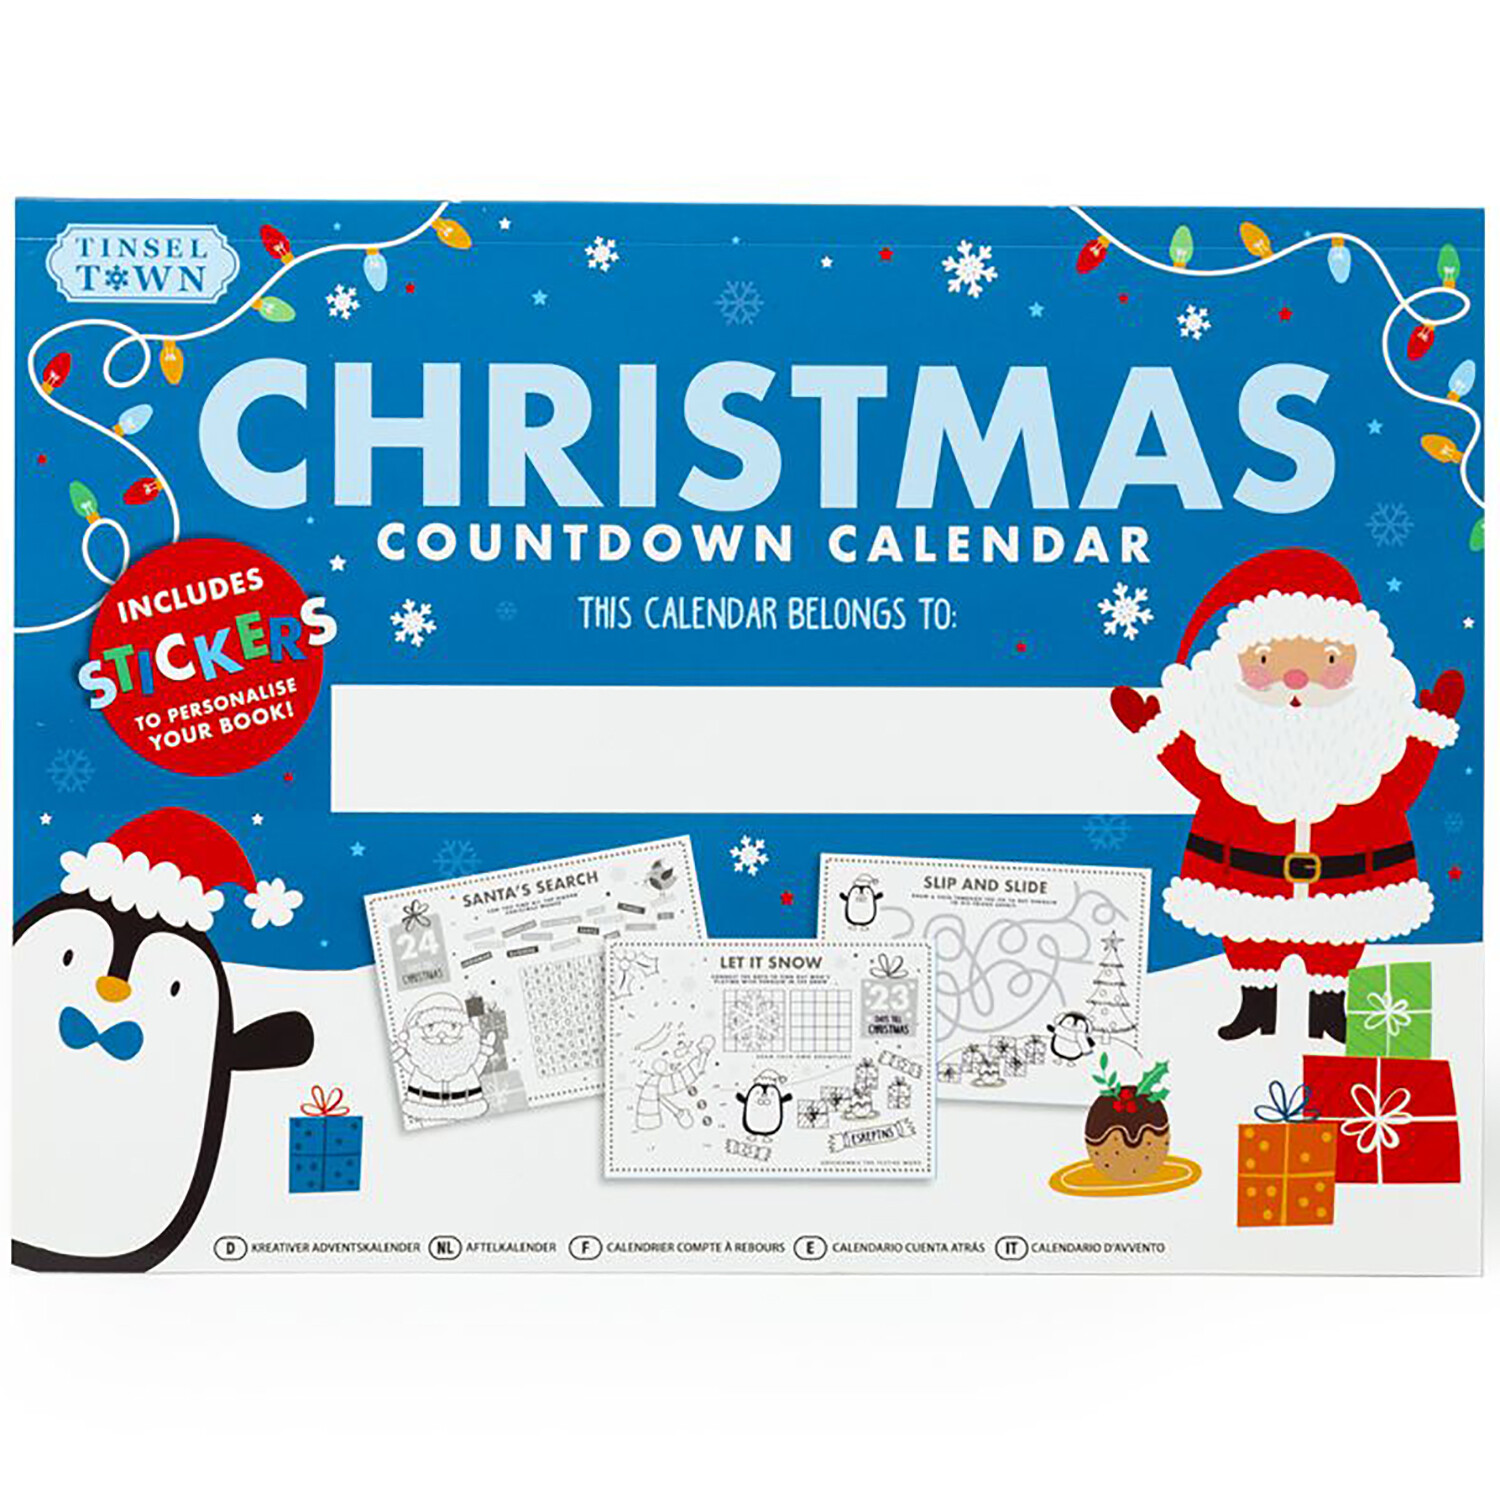 Christmas Countdown Calendar Image